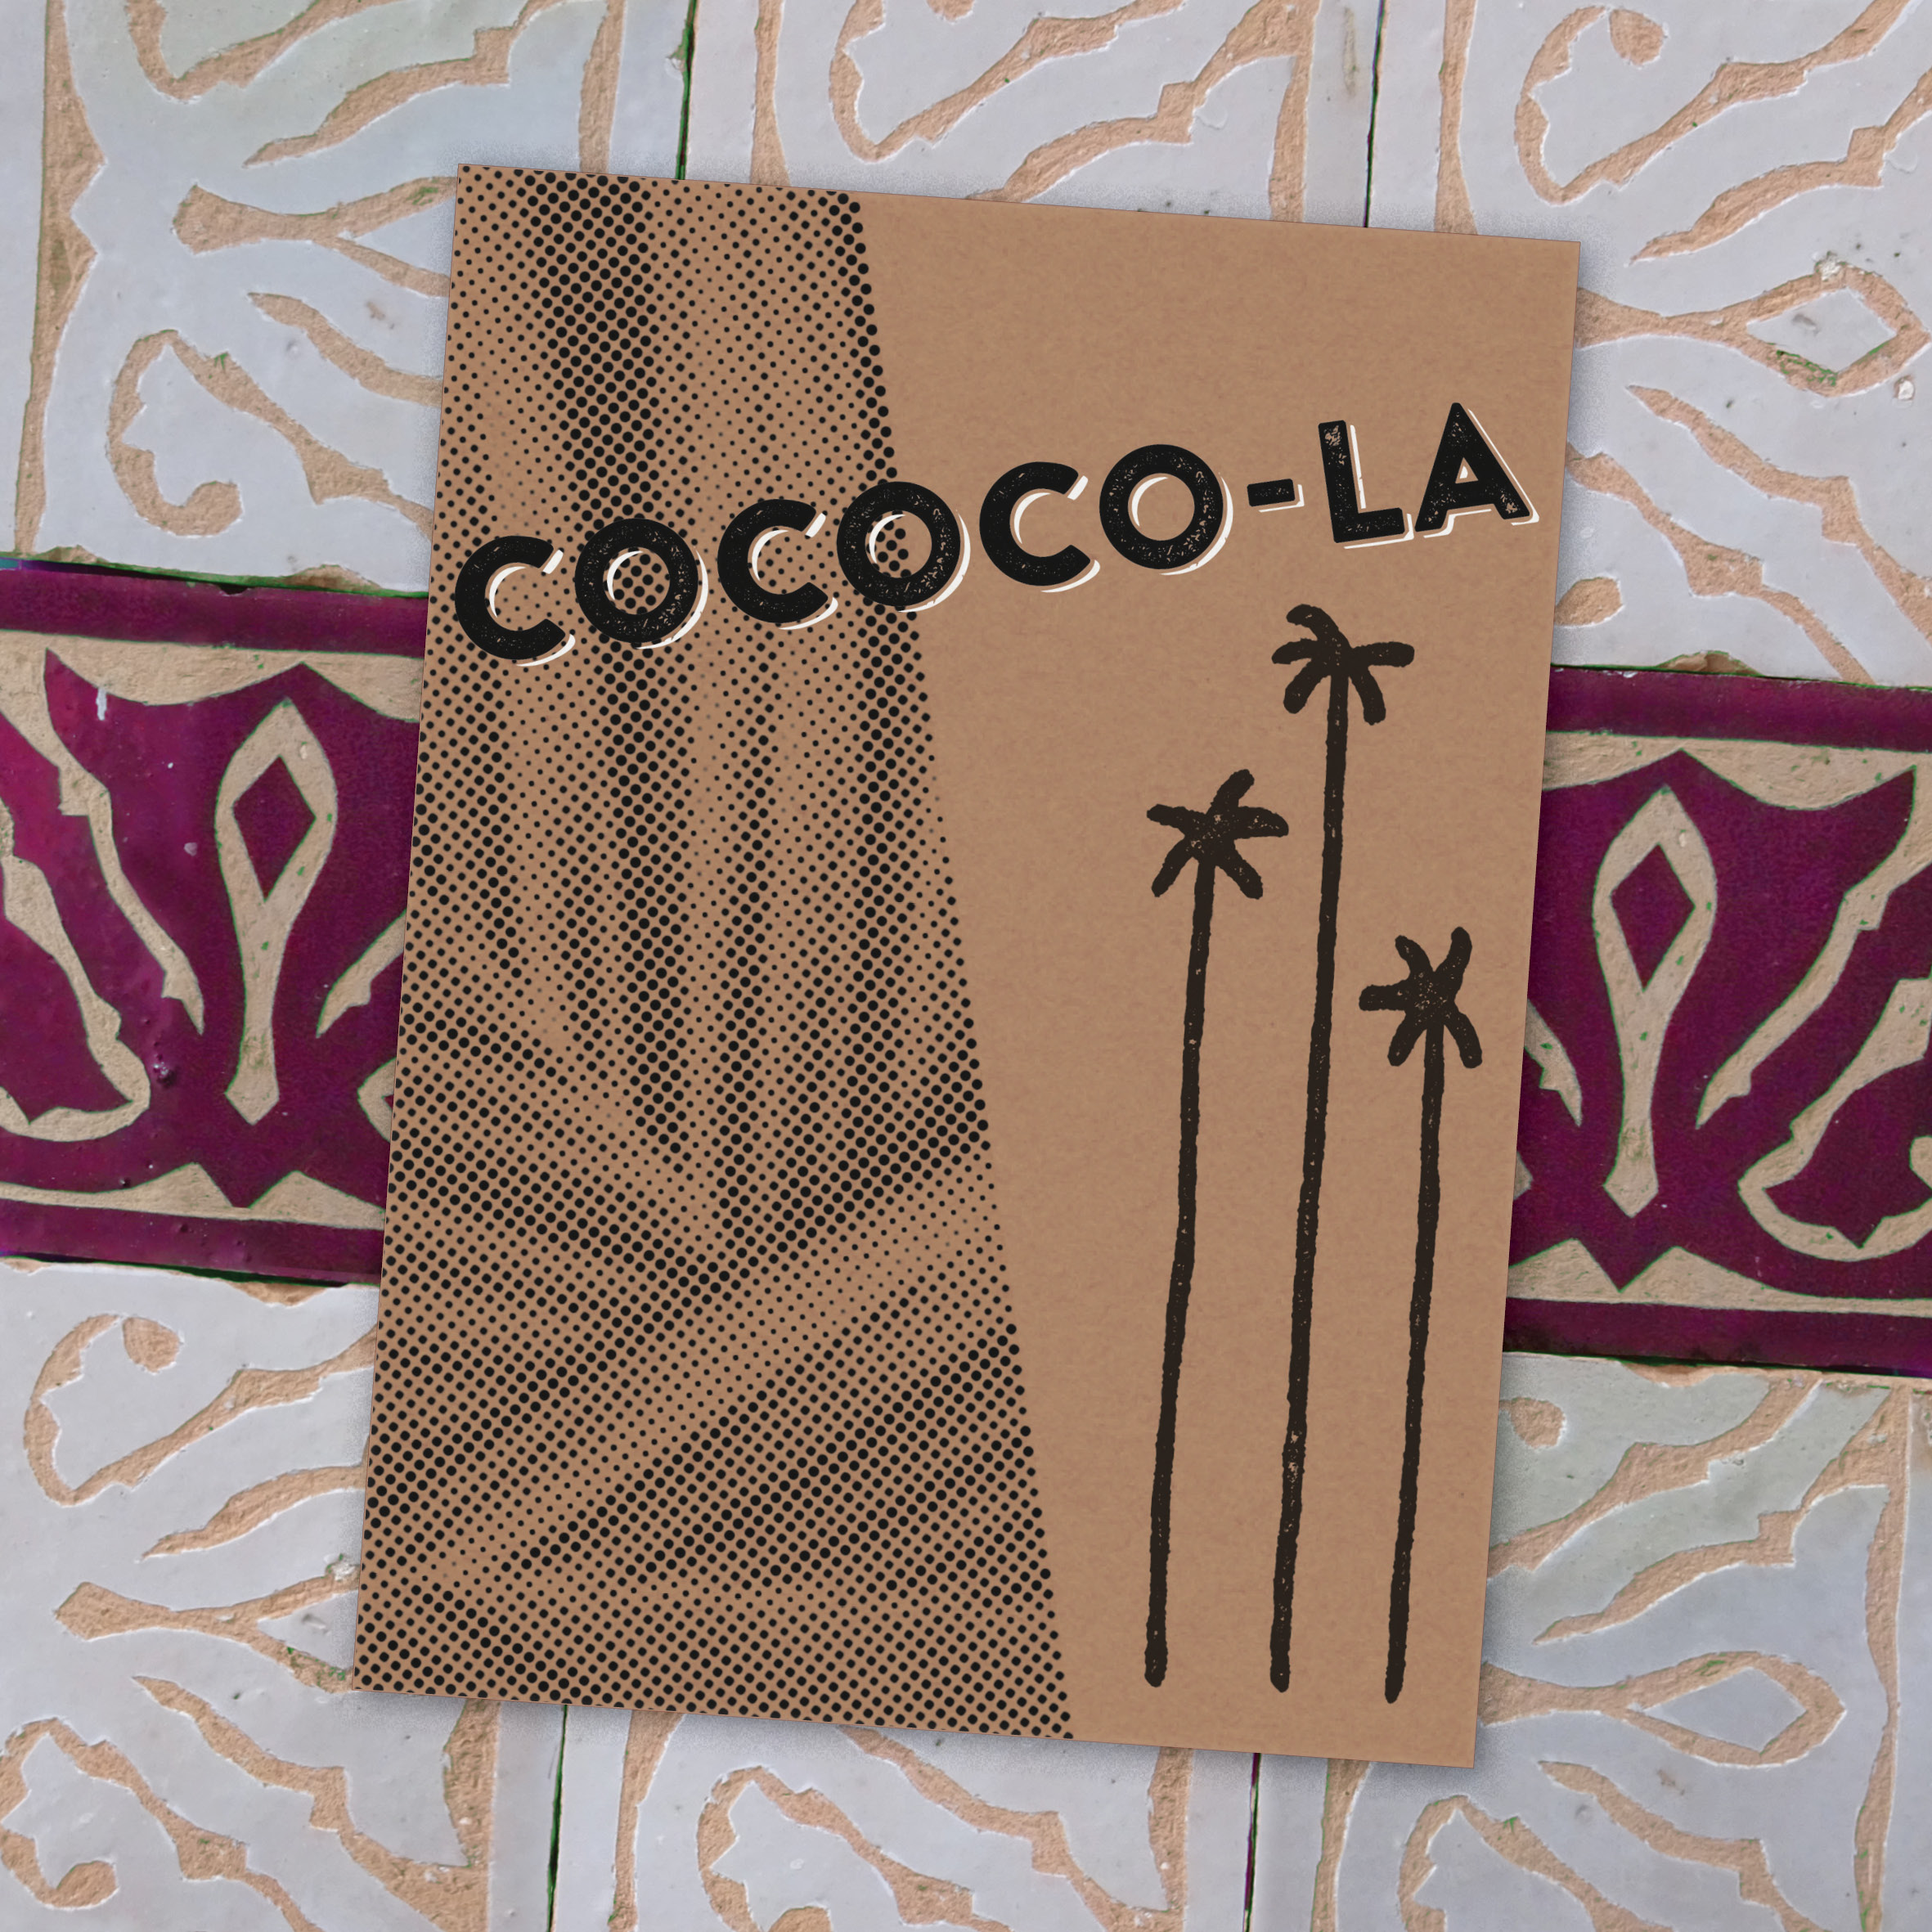 Cococo-la_Thumbnail_Cover